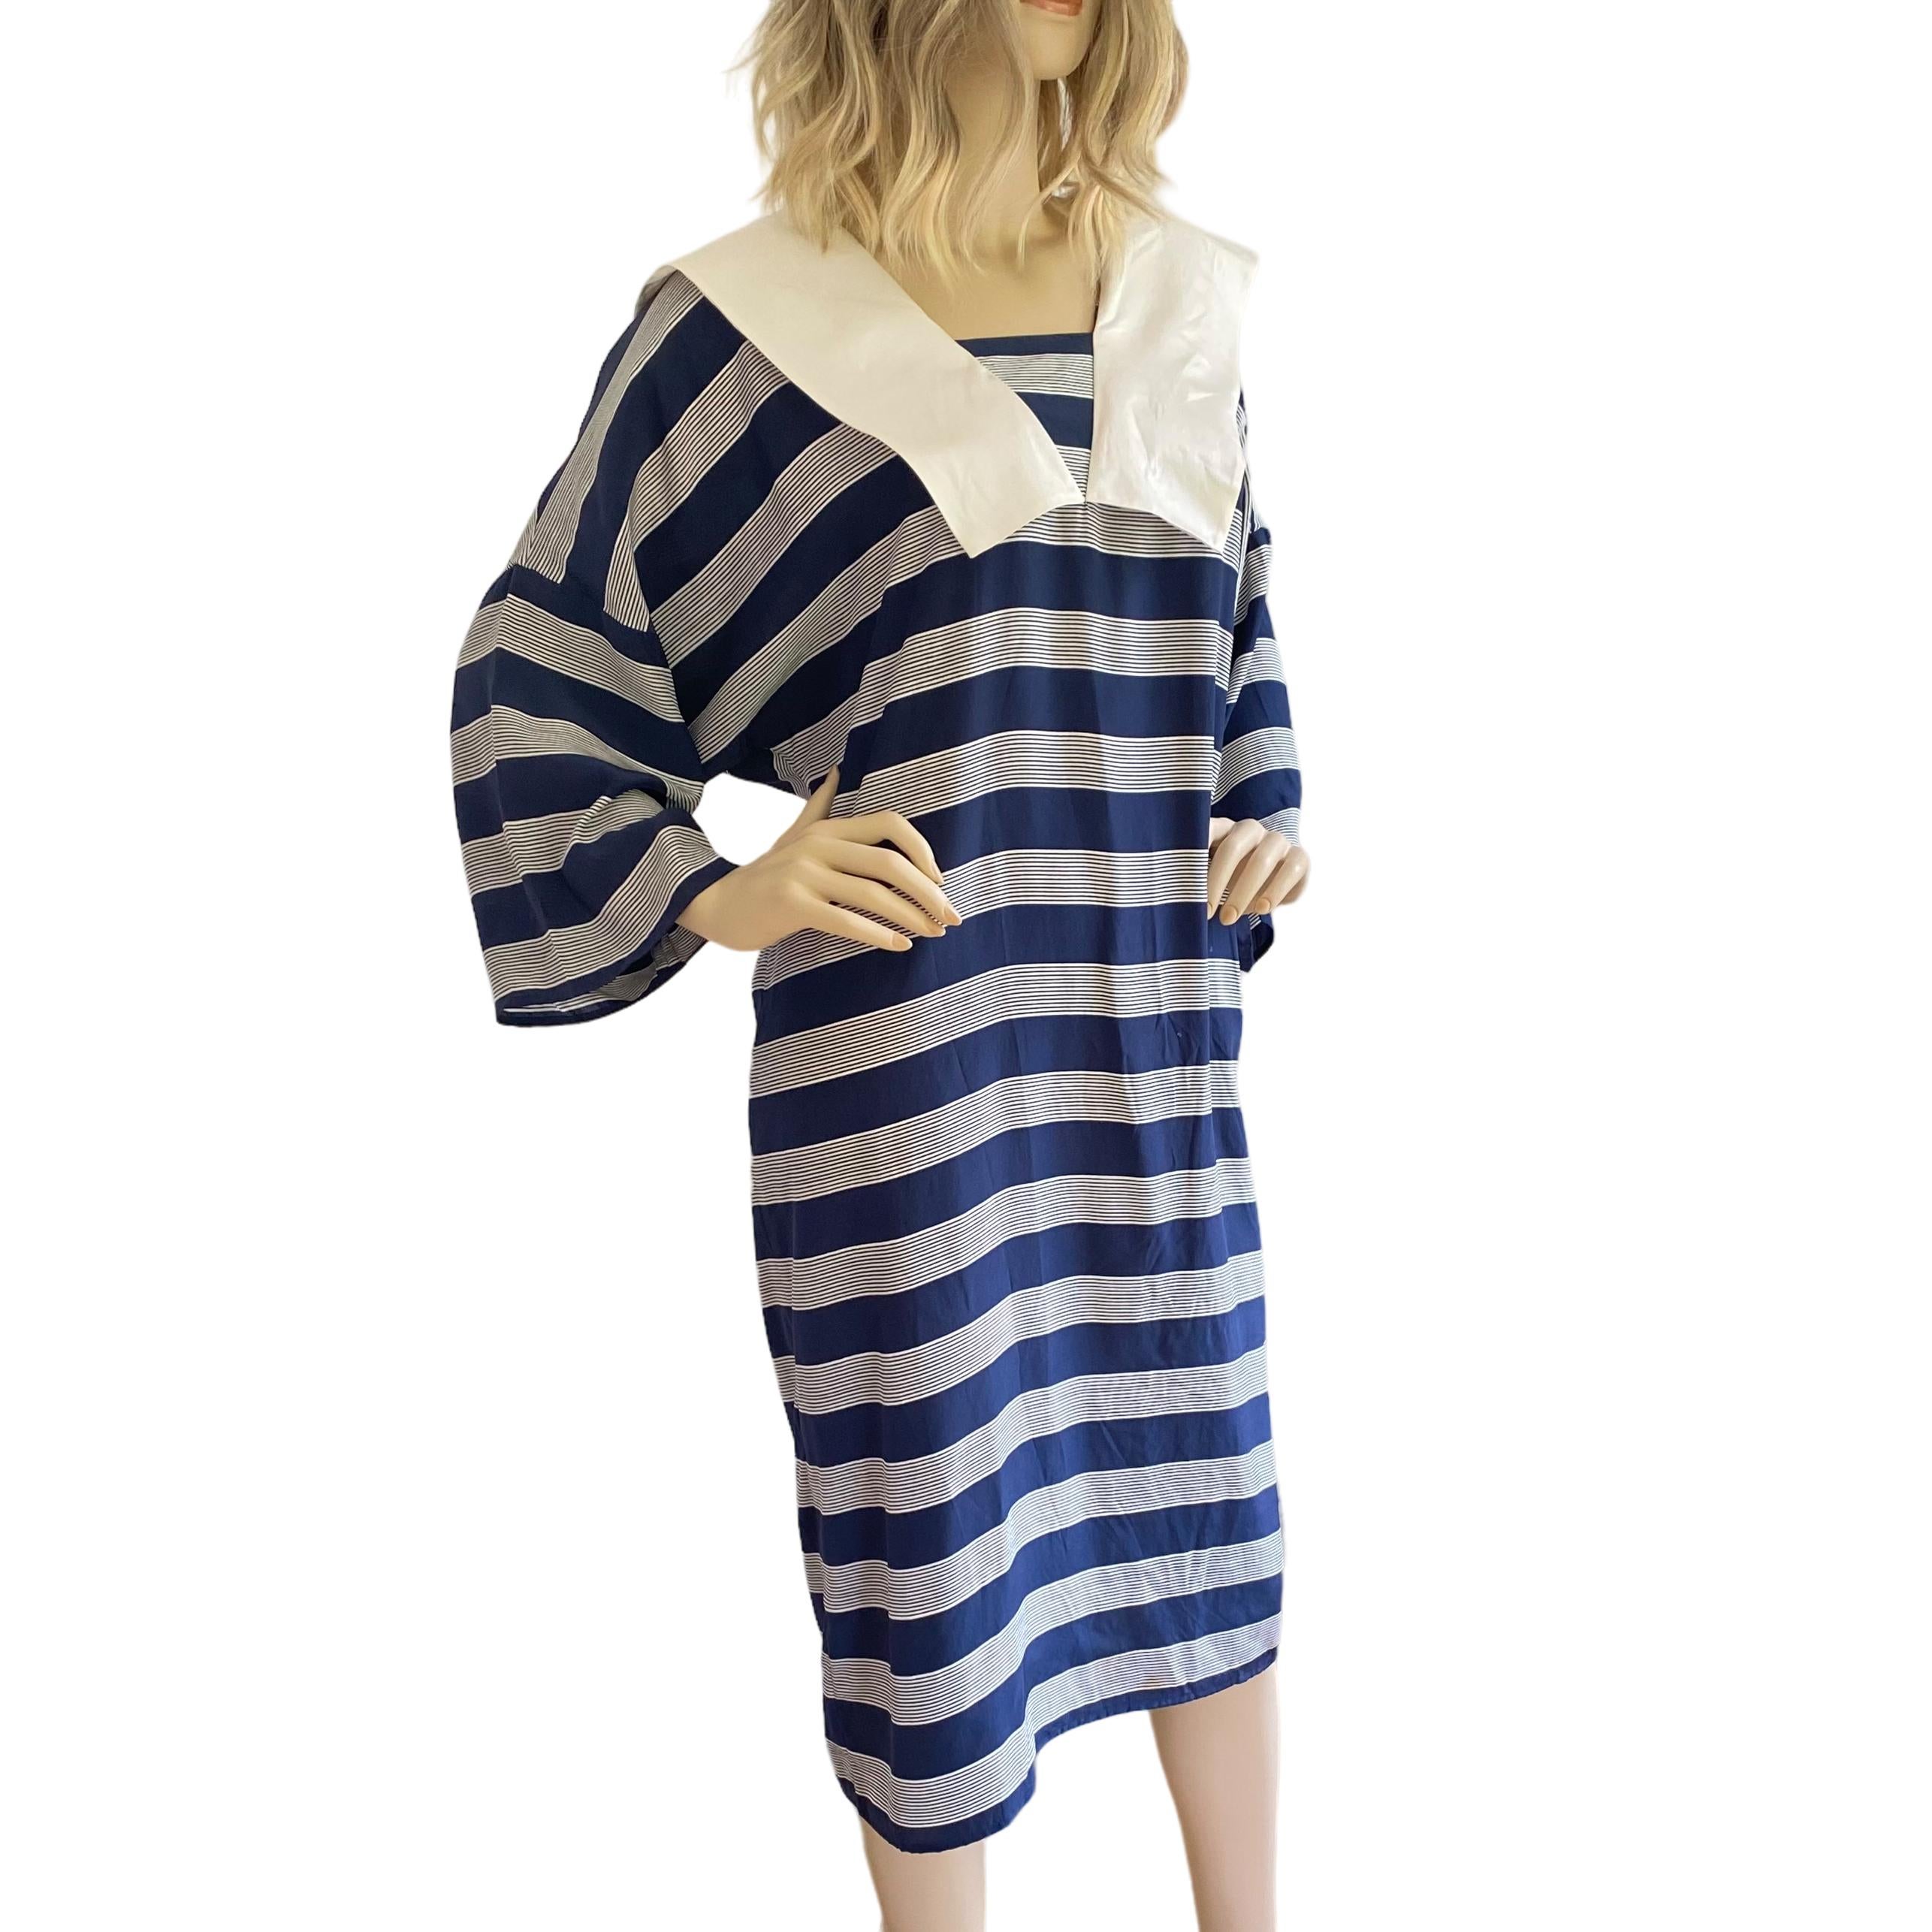 Cool Sailor Silk Sac Dress with Kimono Sleeves  - Flora Kung NWT For Sale 1